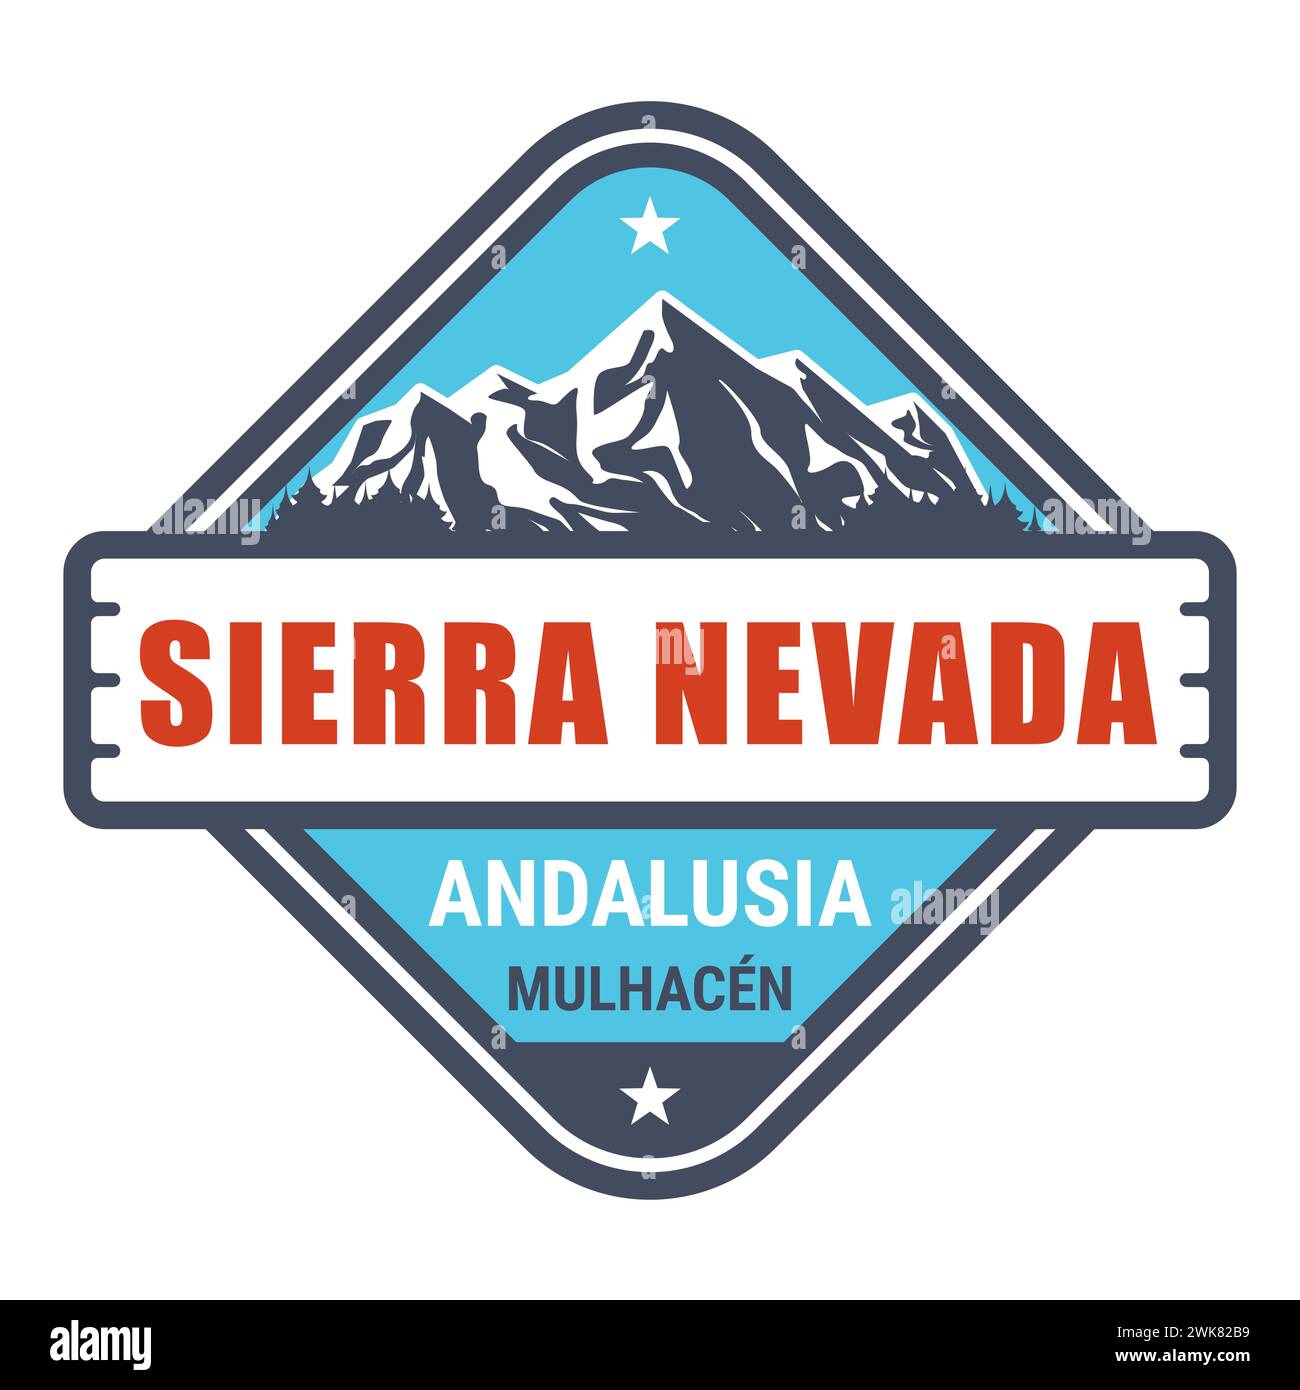 Francobollo della stazione sciistica della Sierra Nevada, emblema della stazione sciistica della Spagna con montagne innevate, Andalusia, Vector Illustrazione Vettoriale